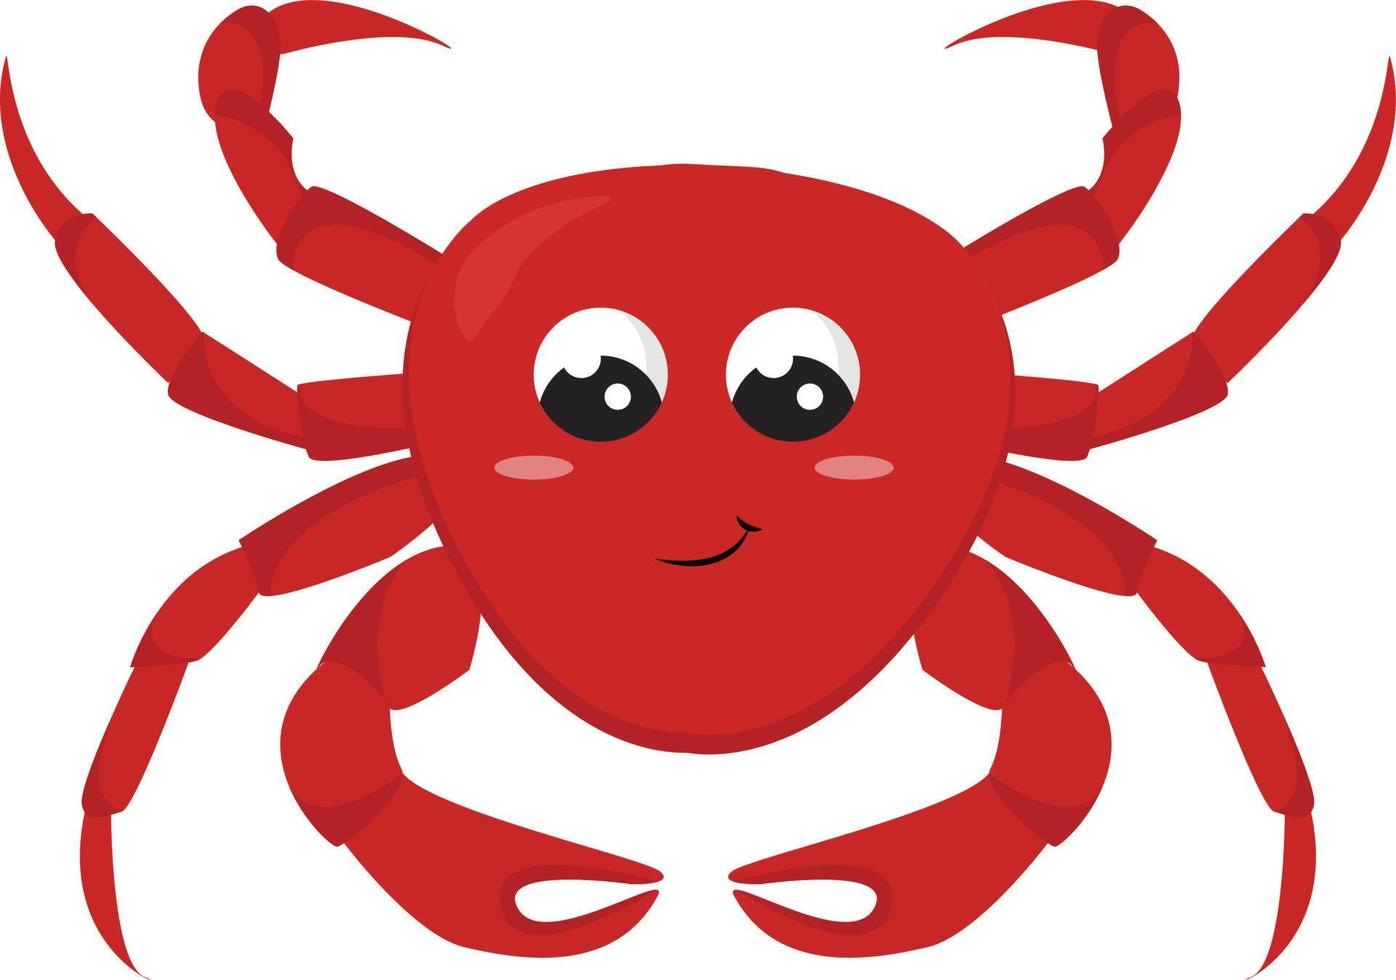 Cangrejo rojo sonriente, ilustración, vector sobre fondo blanco.